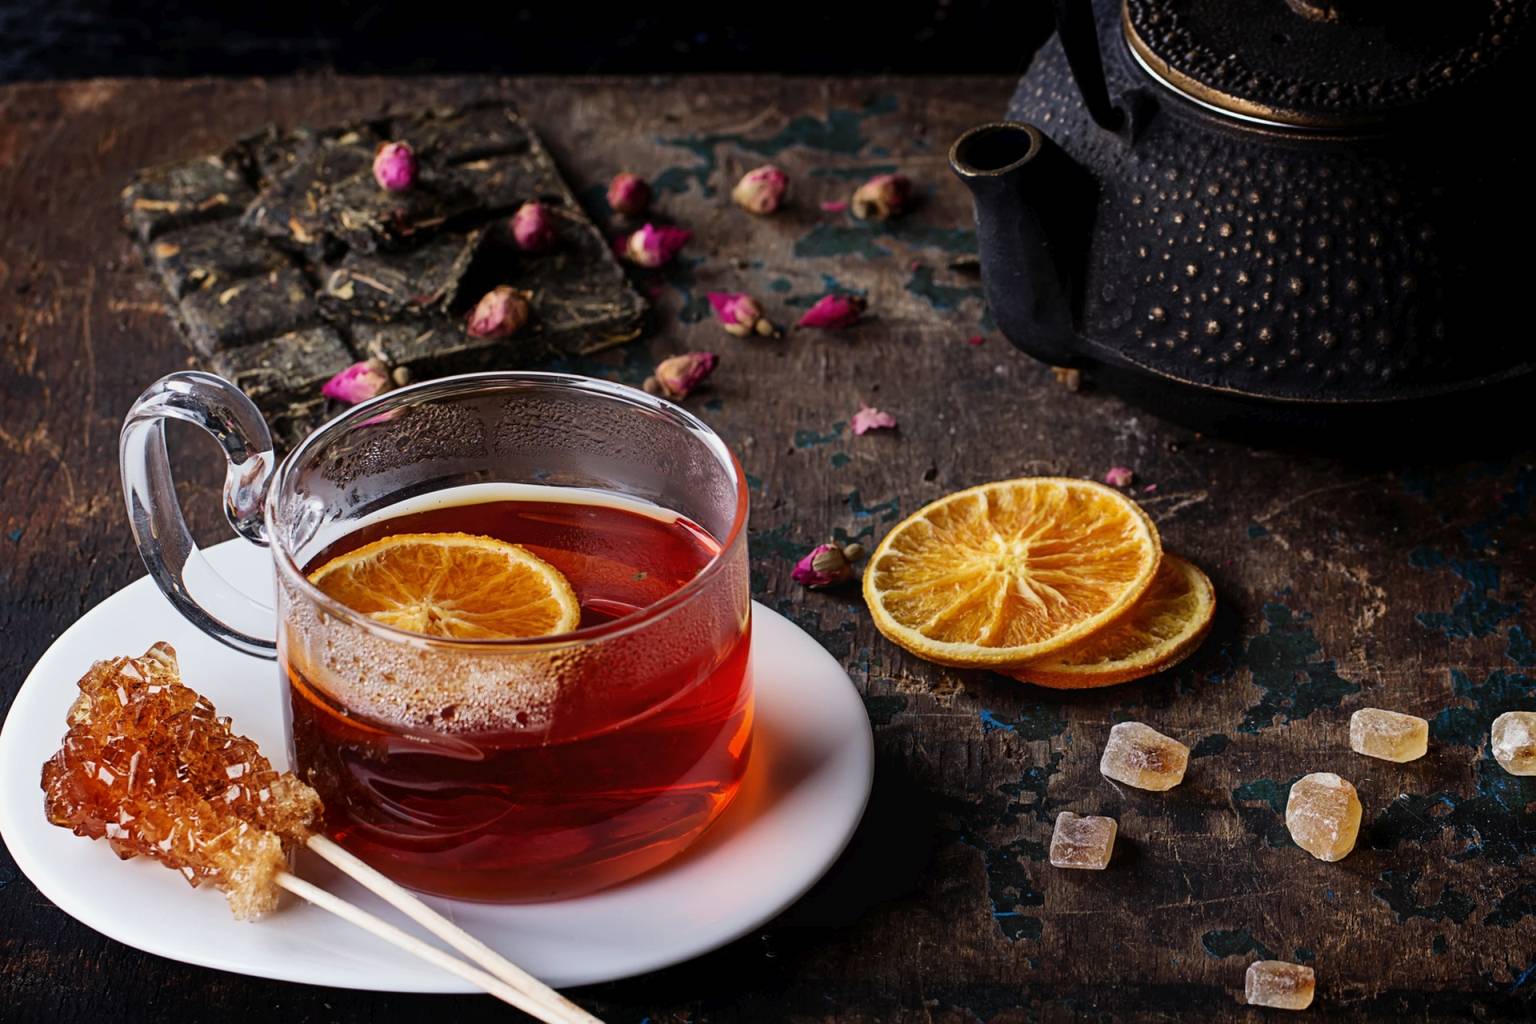 Czerwona herbata rooibos zaparzona w filiżance z plasterkiem pomarańczy.